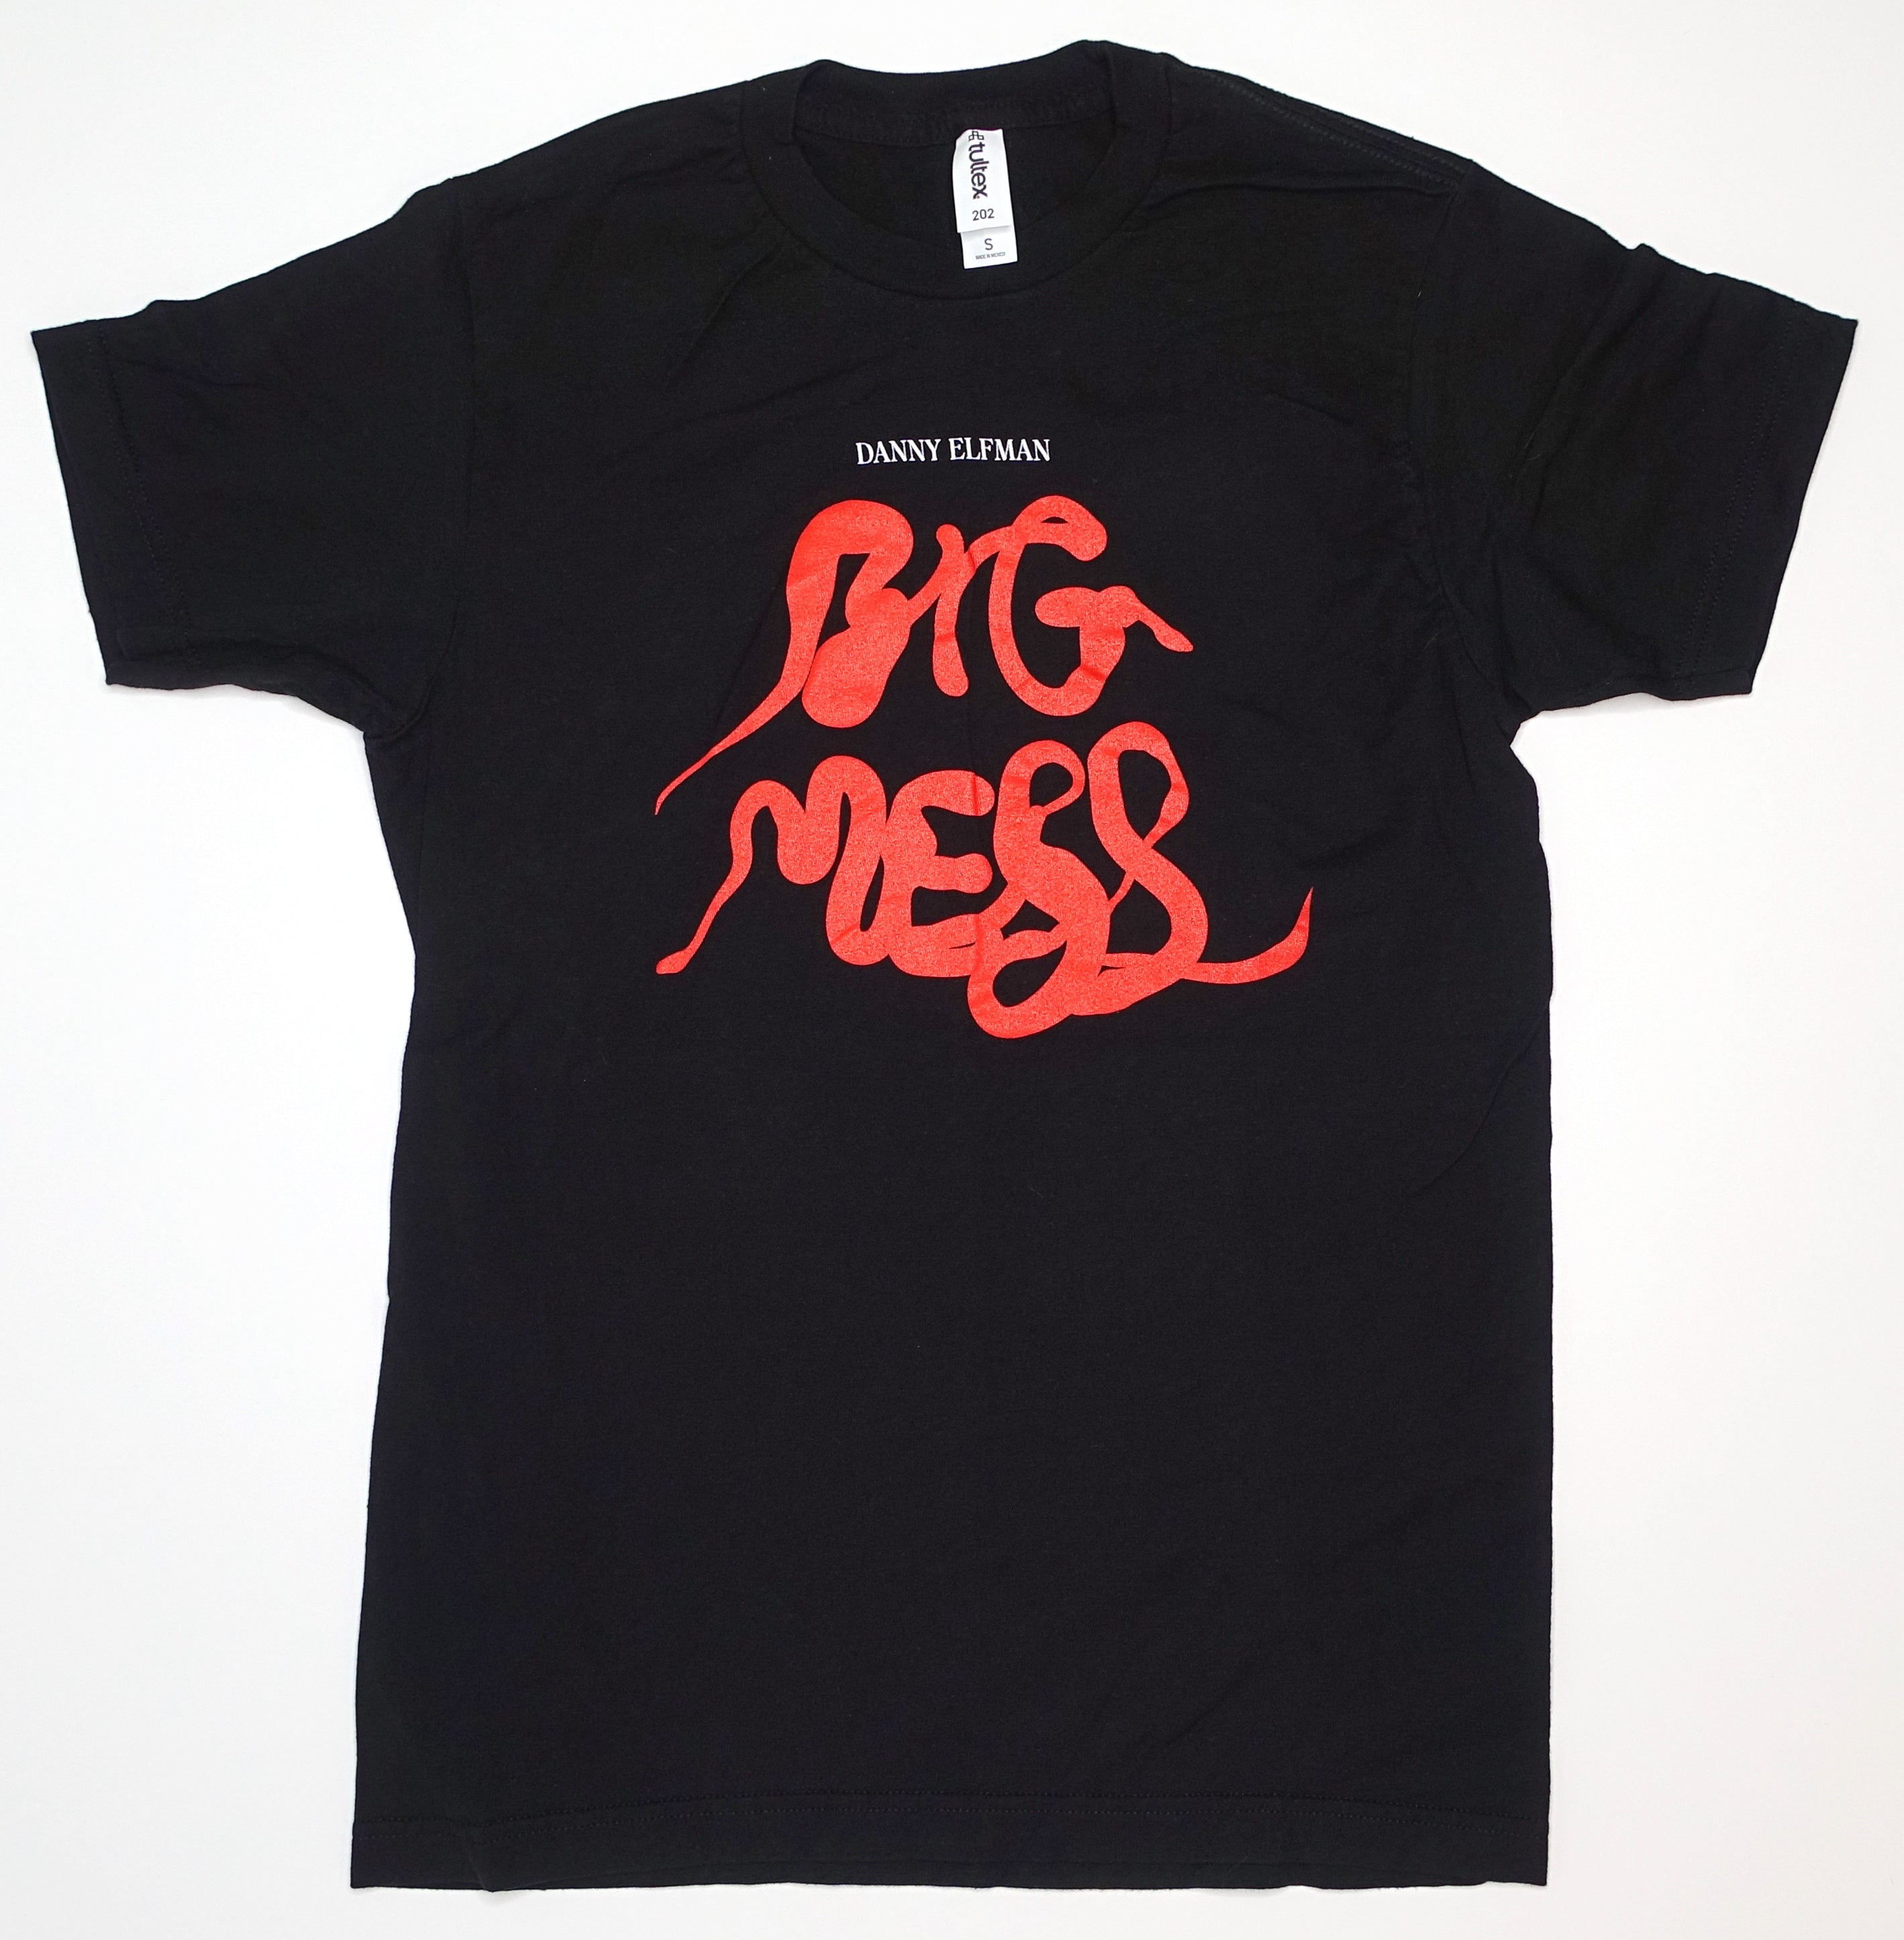 Danny Elfman – Big Mess 2021 Tour Shirt Size Small